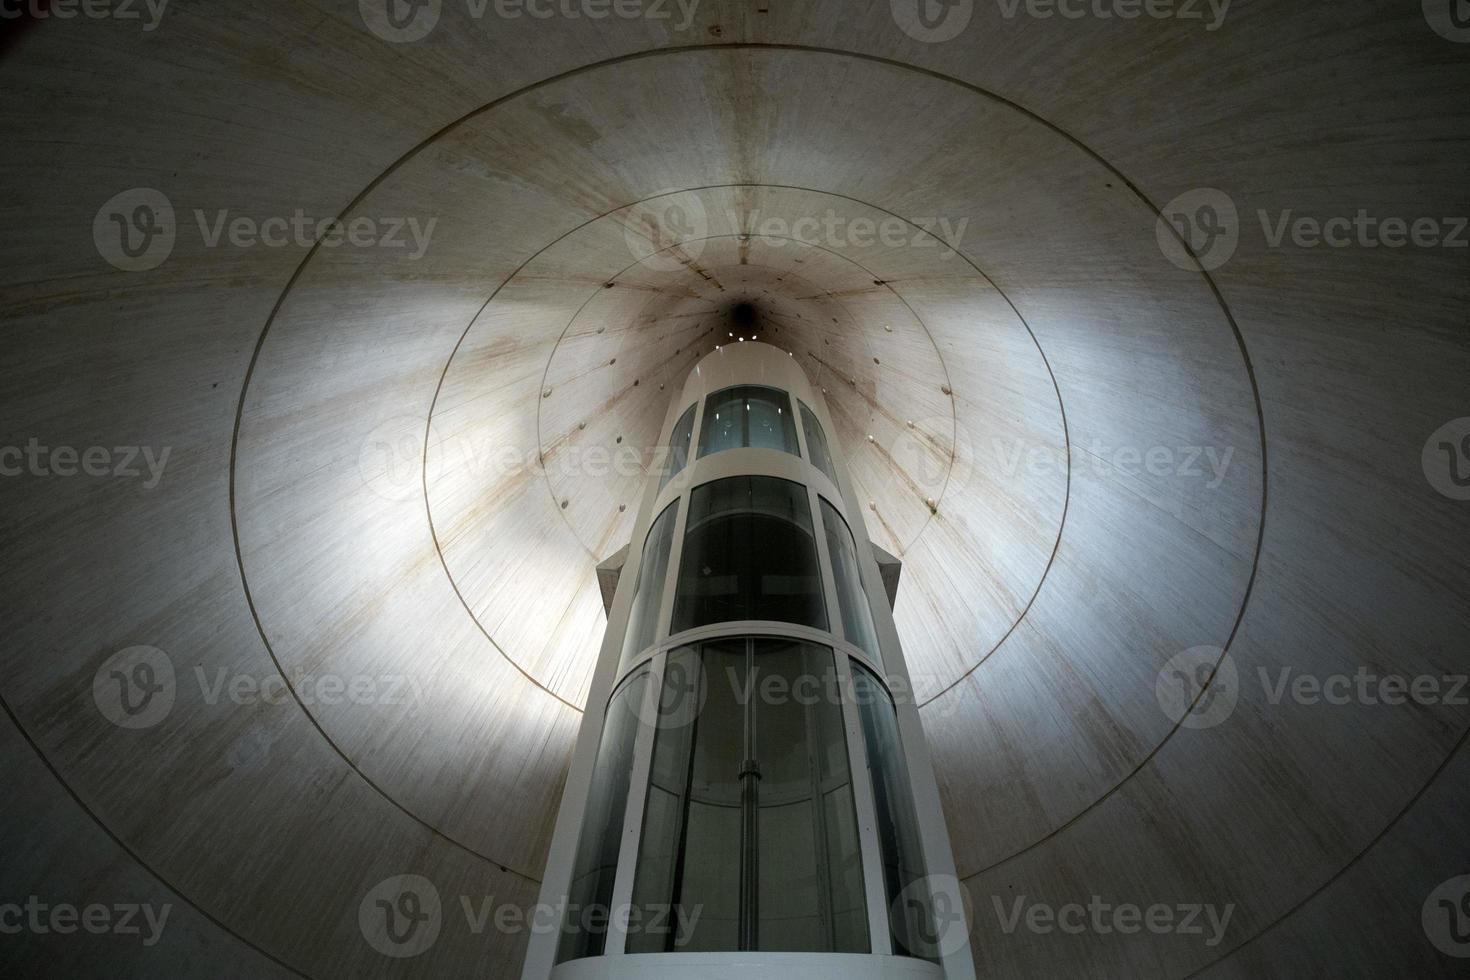 nucleair raket lancering silo Rusland Oekraïne oorlog foto